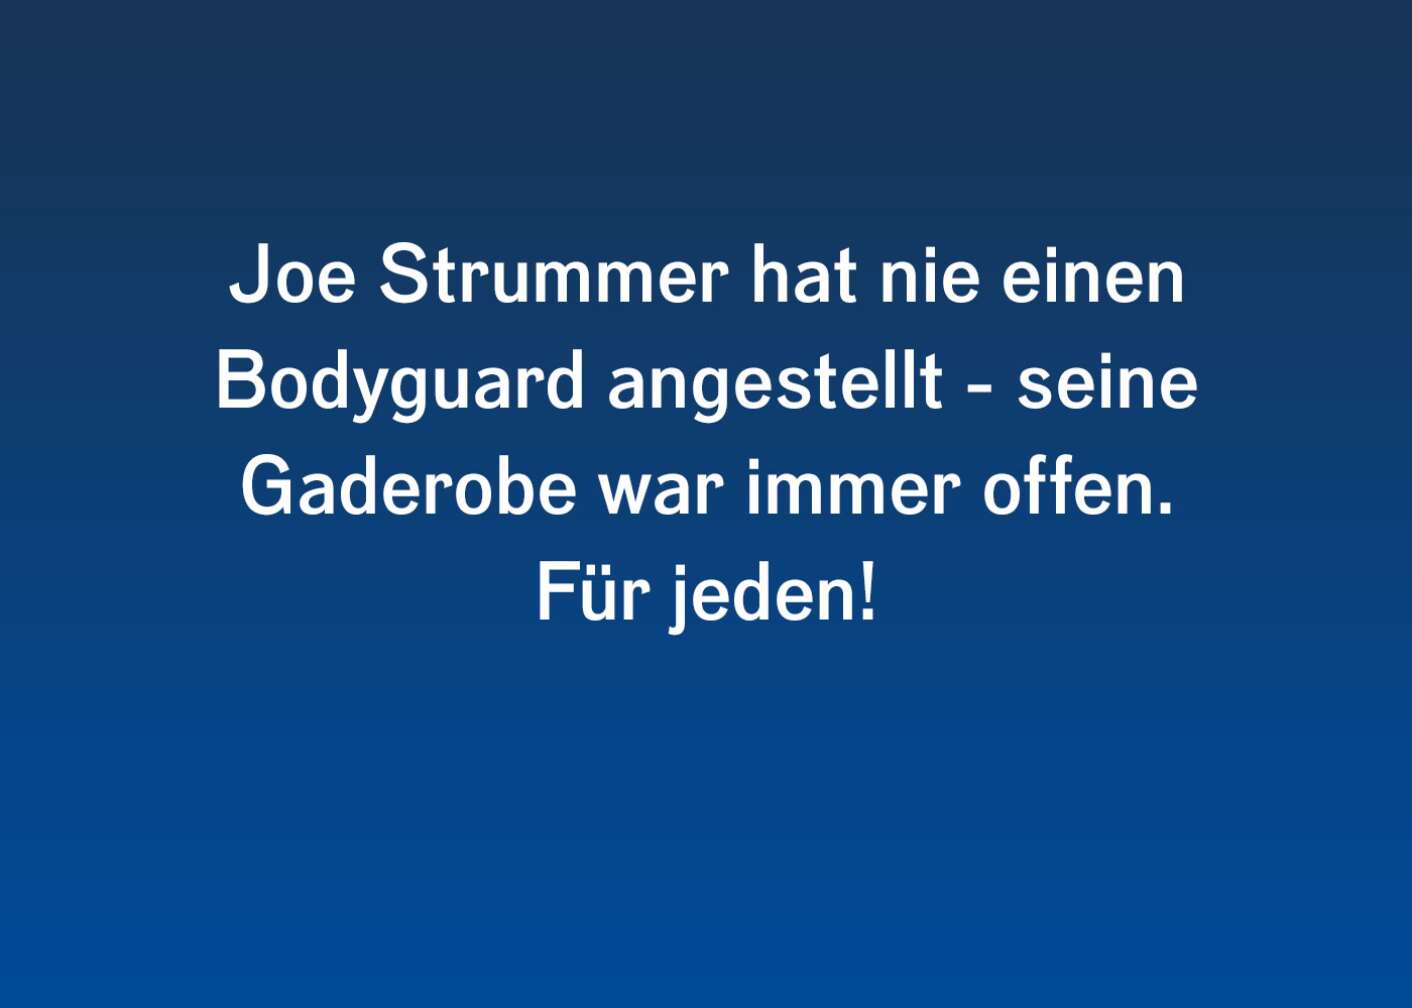 Spannende Fakten zu Joe Strummer